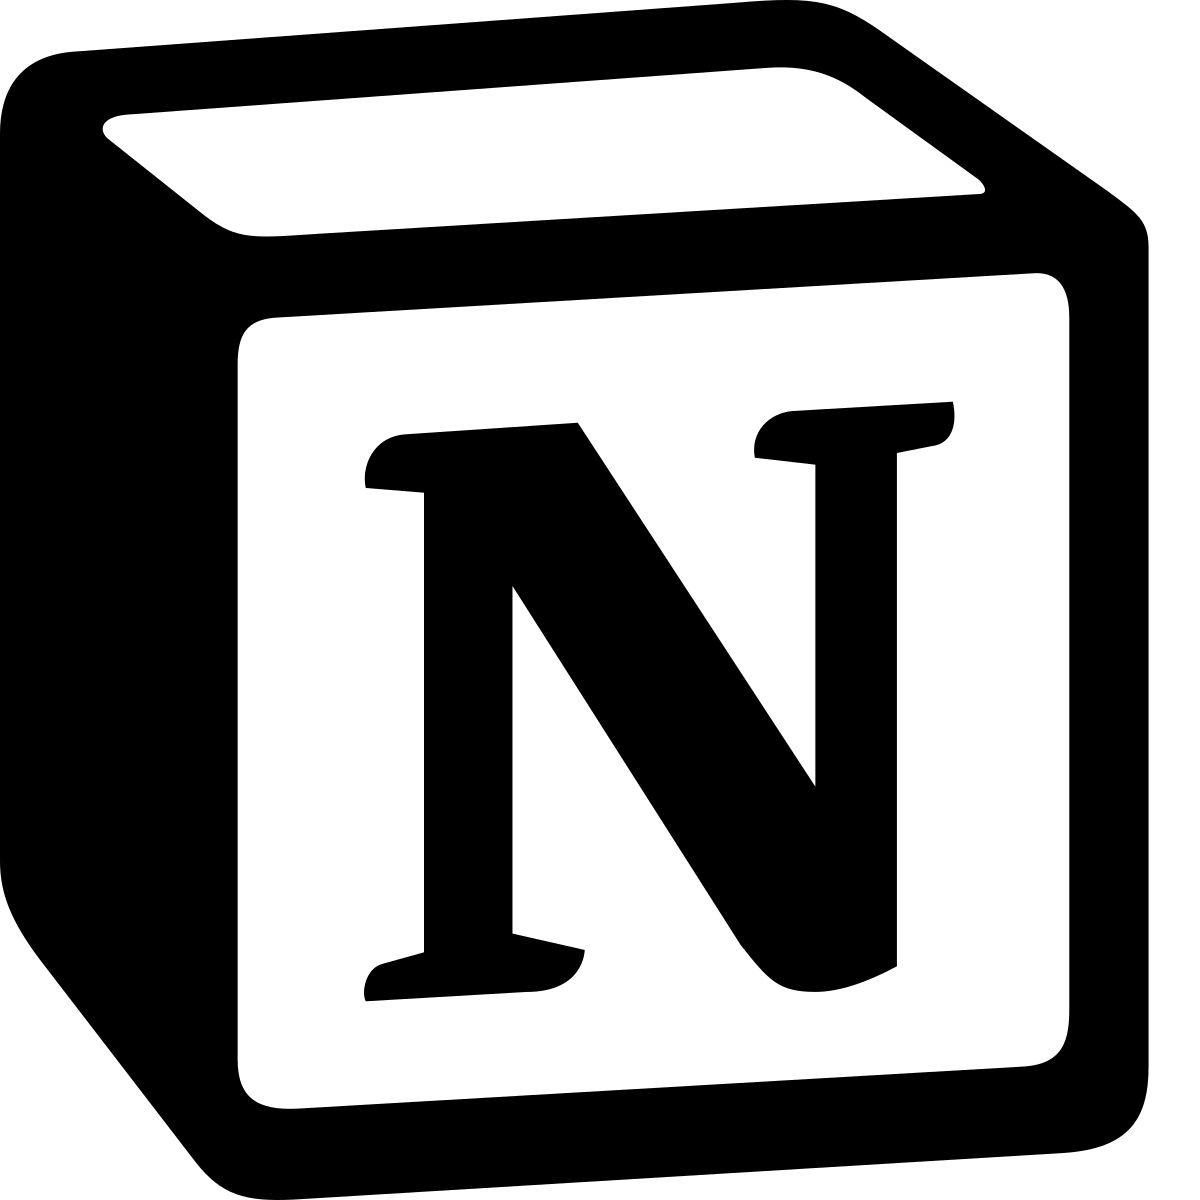 Notion - Wikipedia